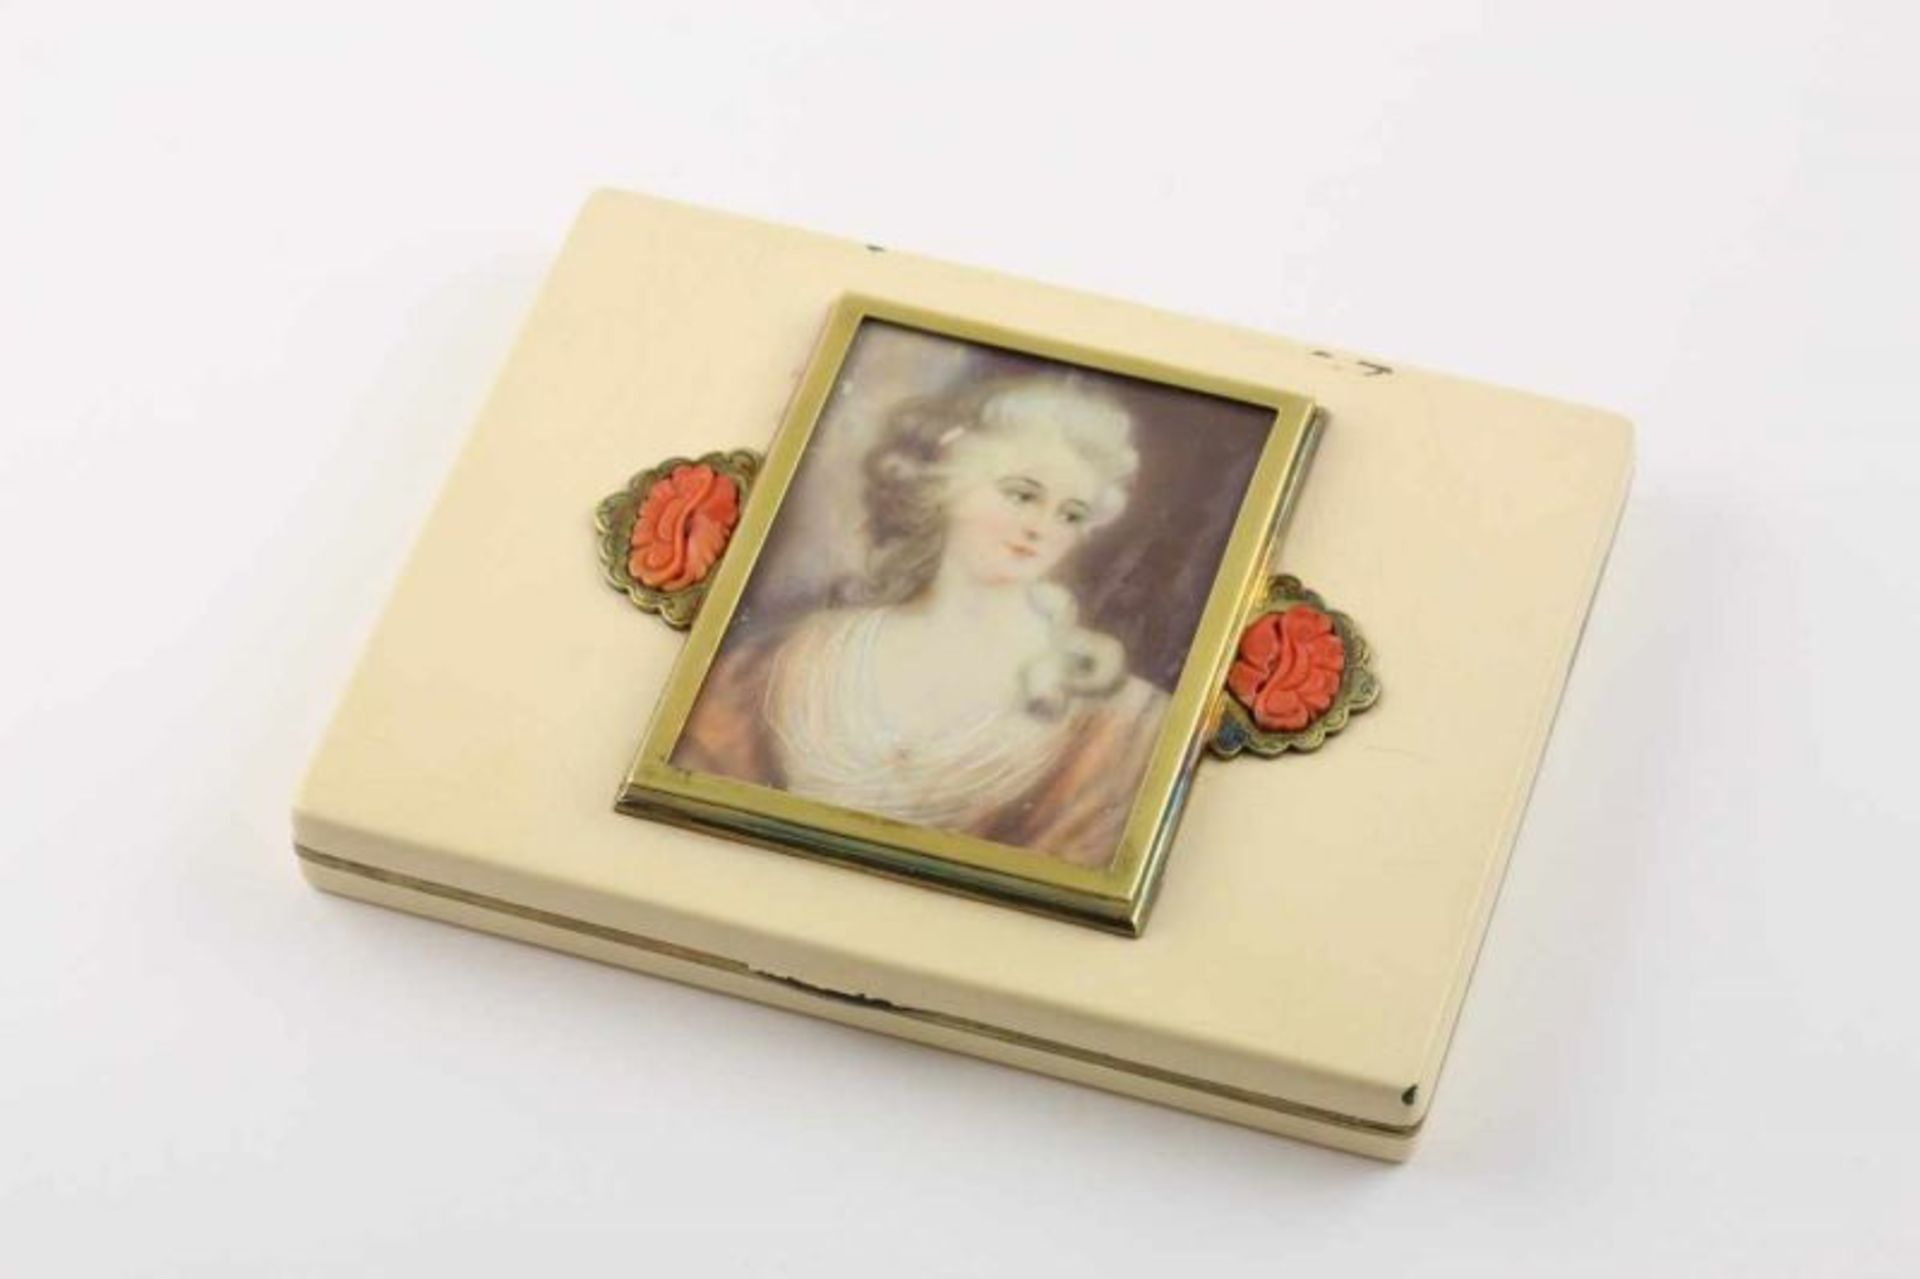 ZIGARETTENDOSE, Metall, vergoldet, crèmefarben emailliert, auf dem Deckel Miniaturportrait in